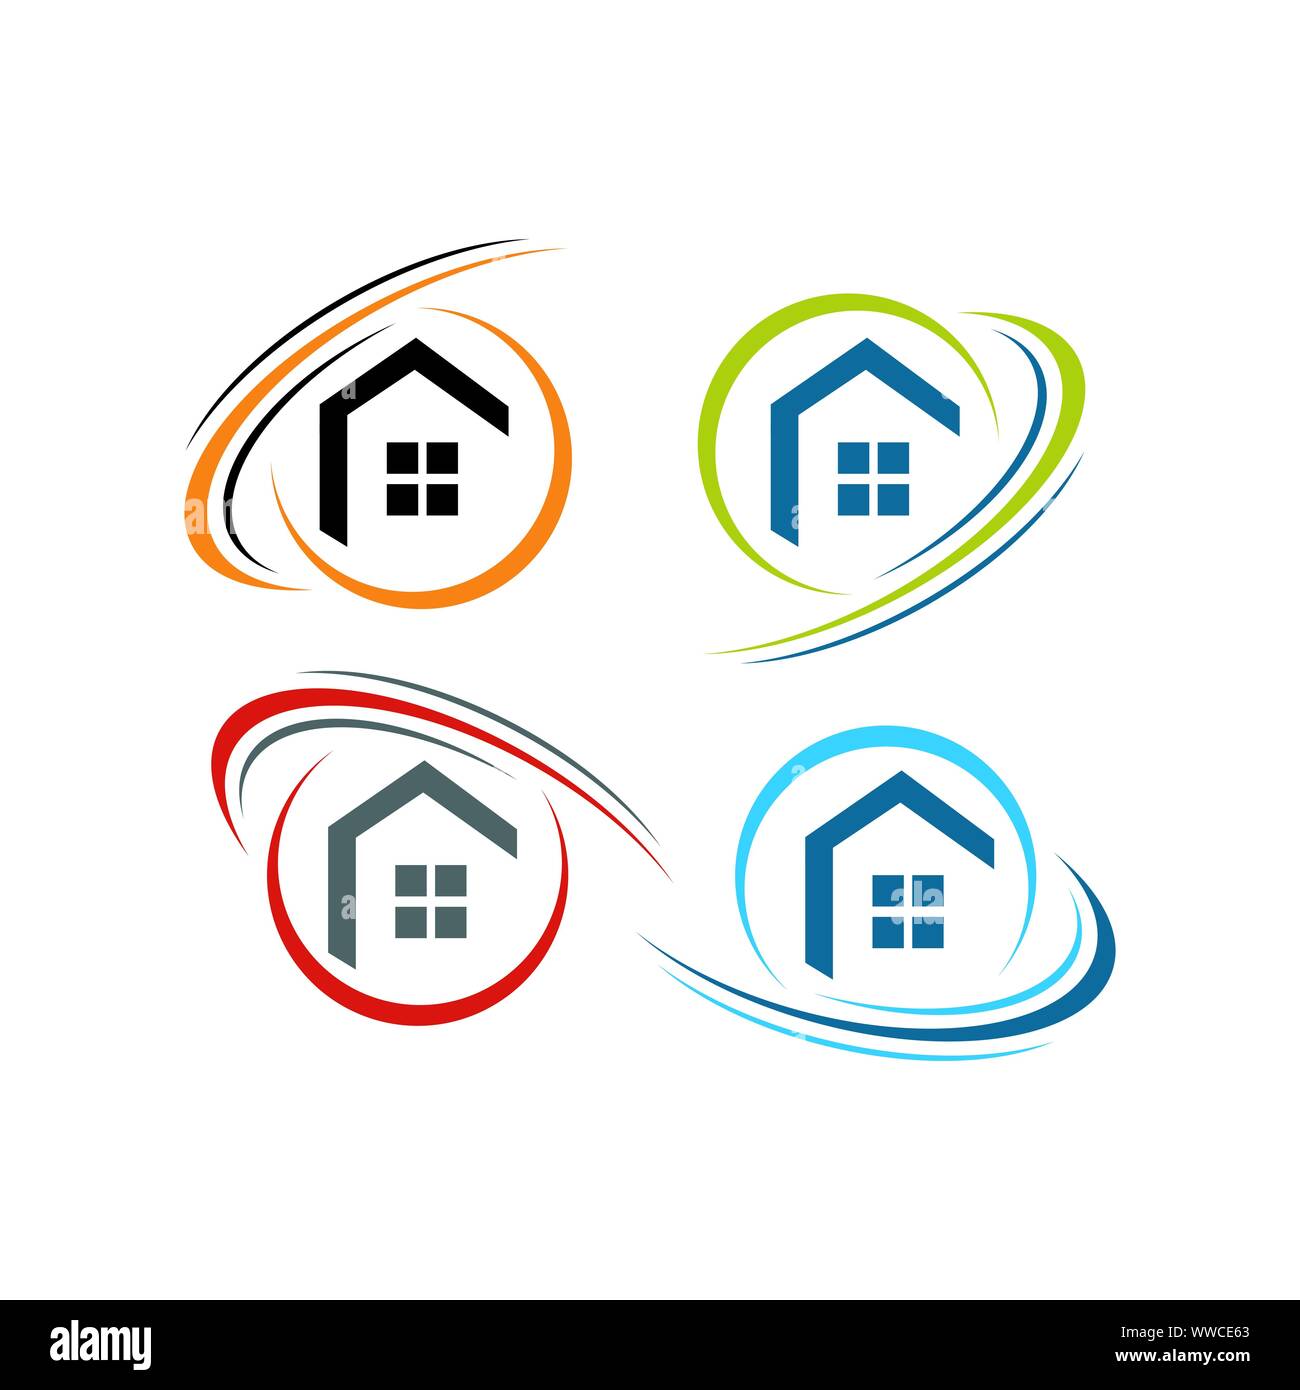 Konzept und Idee von Apartment Haus immo Logo Design Vector home Hochbau Architektur Symbol Stock Vektor